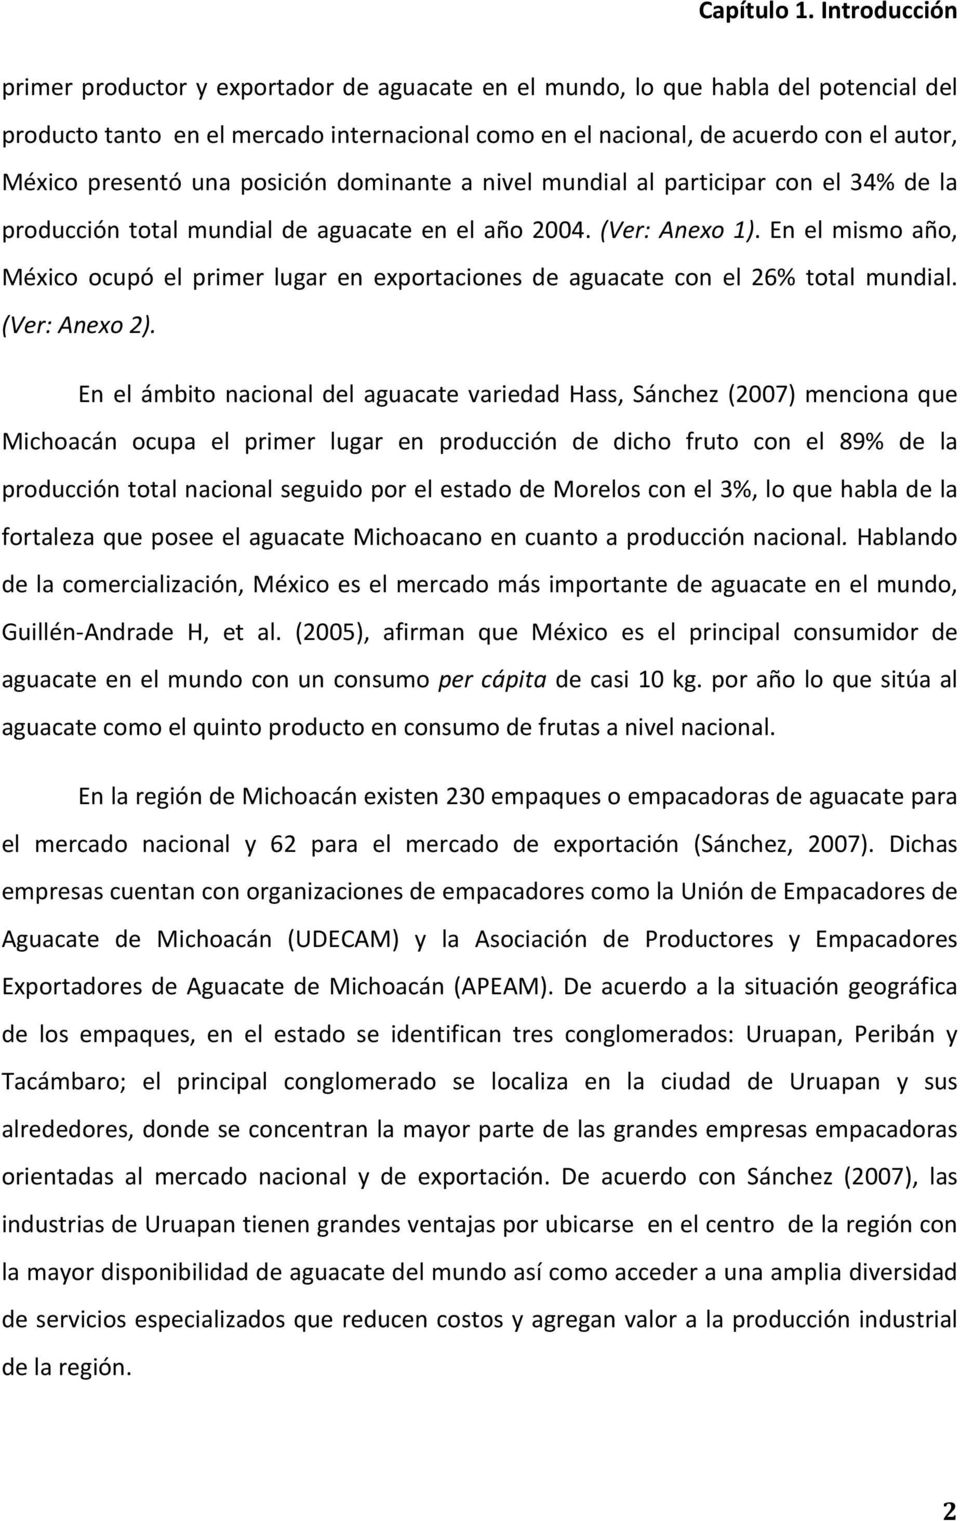 En el mismo año, México ocupó el primer lugar en exportaciones de aguacate con el 26% total mundial. (Ver: Anexo 2).